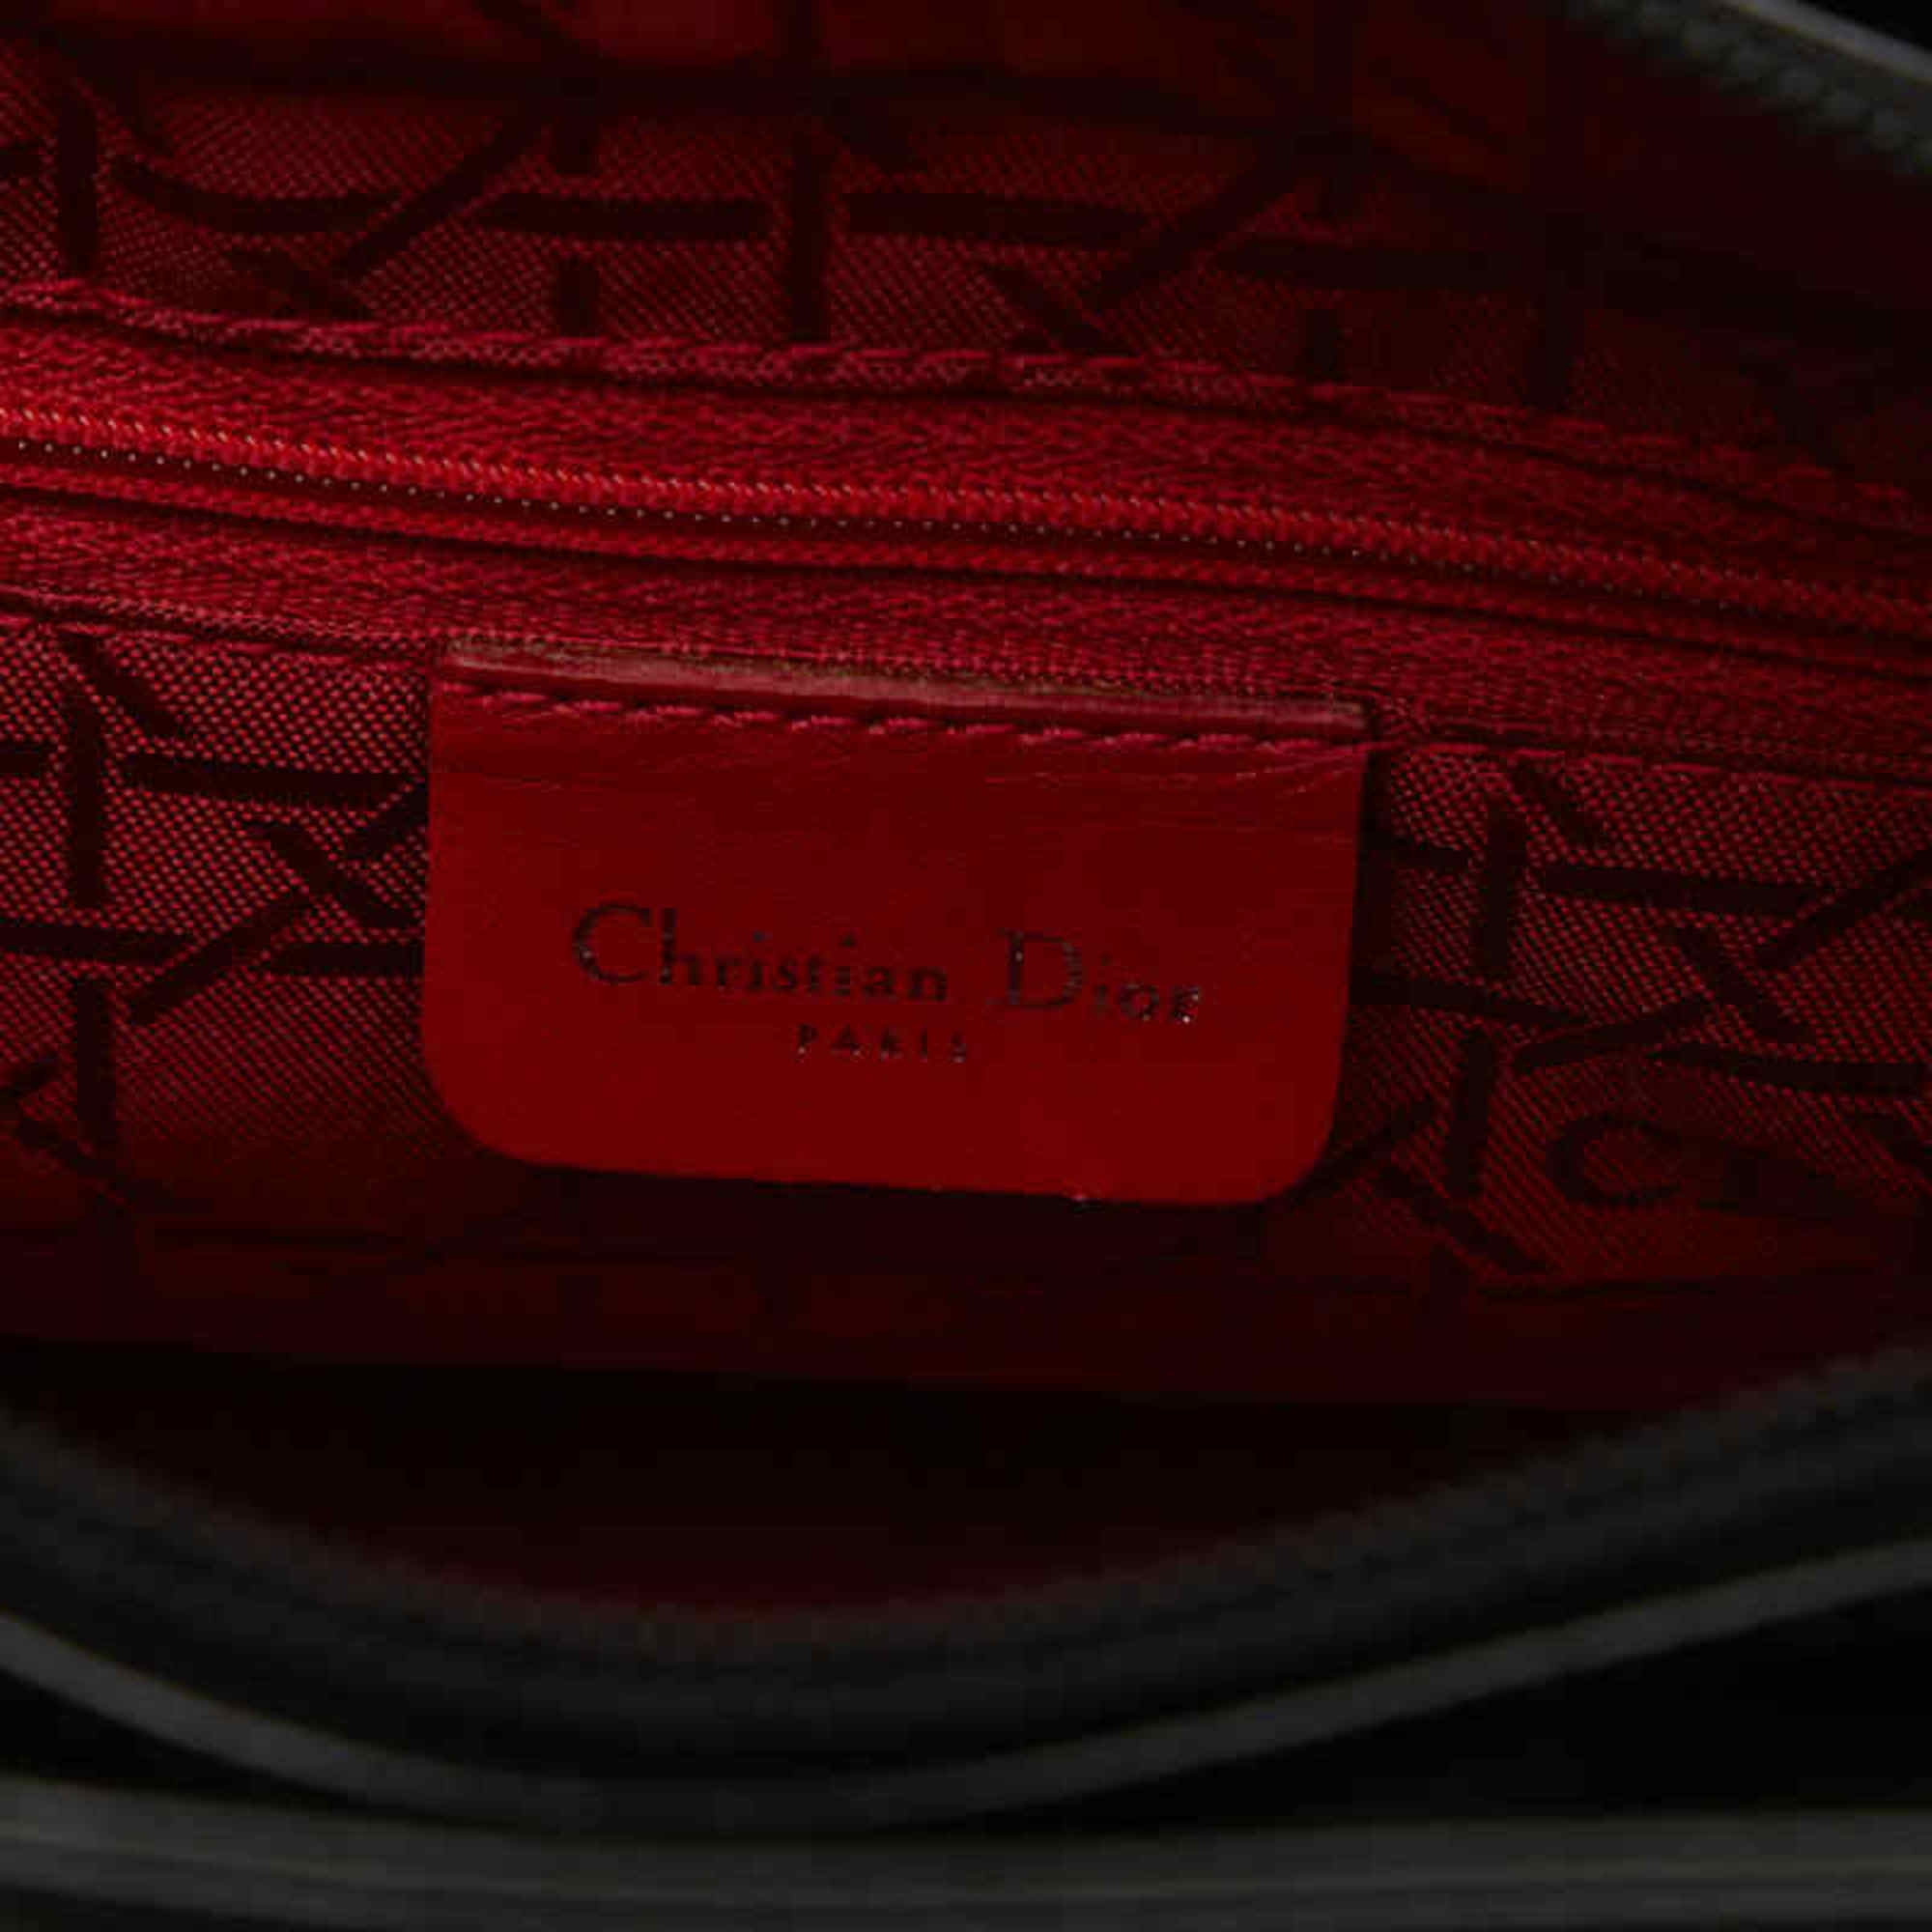 Christian Dior Dior Lady Handbag Shoulder Bag Black Patent Leather Women's